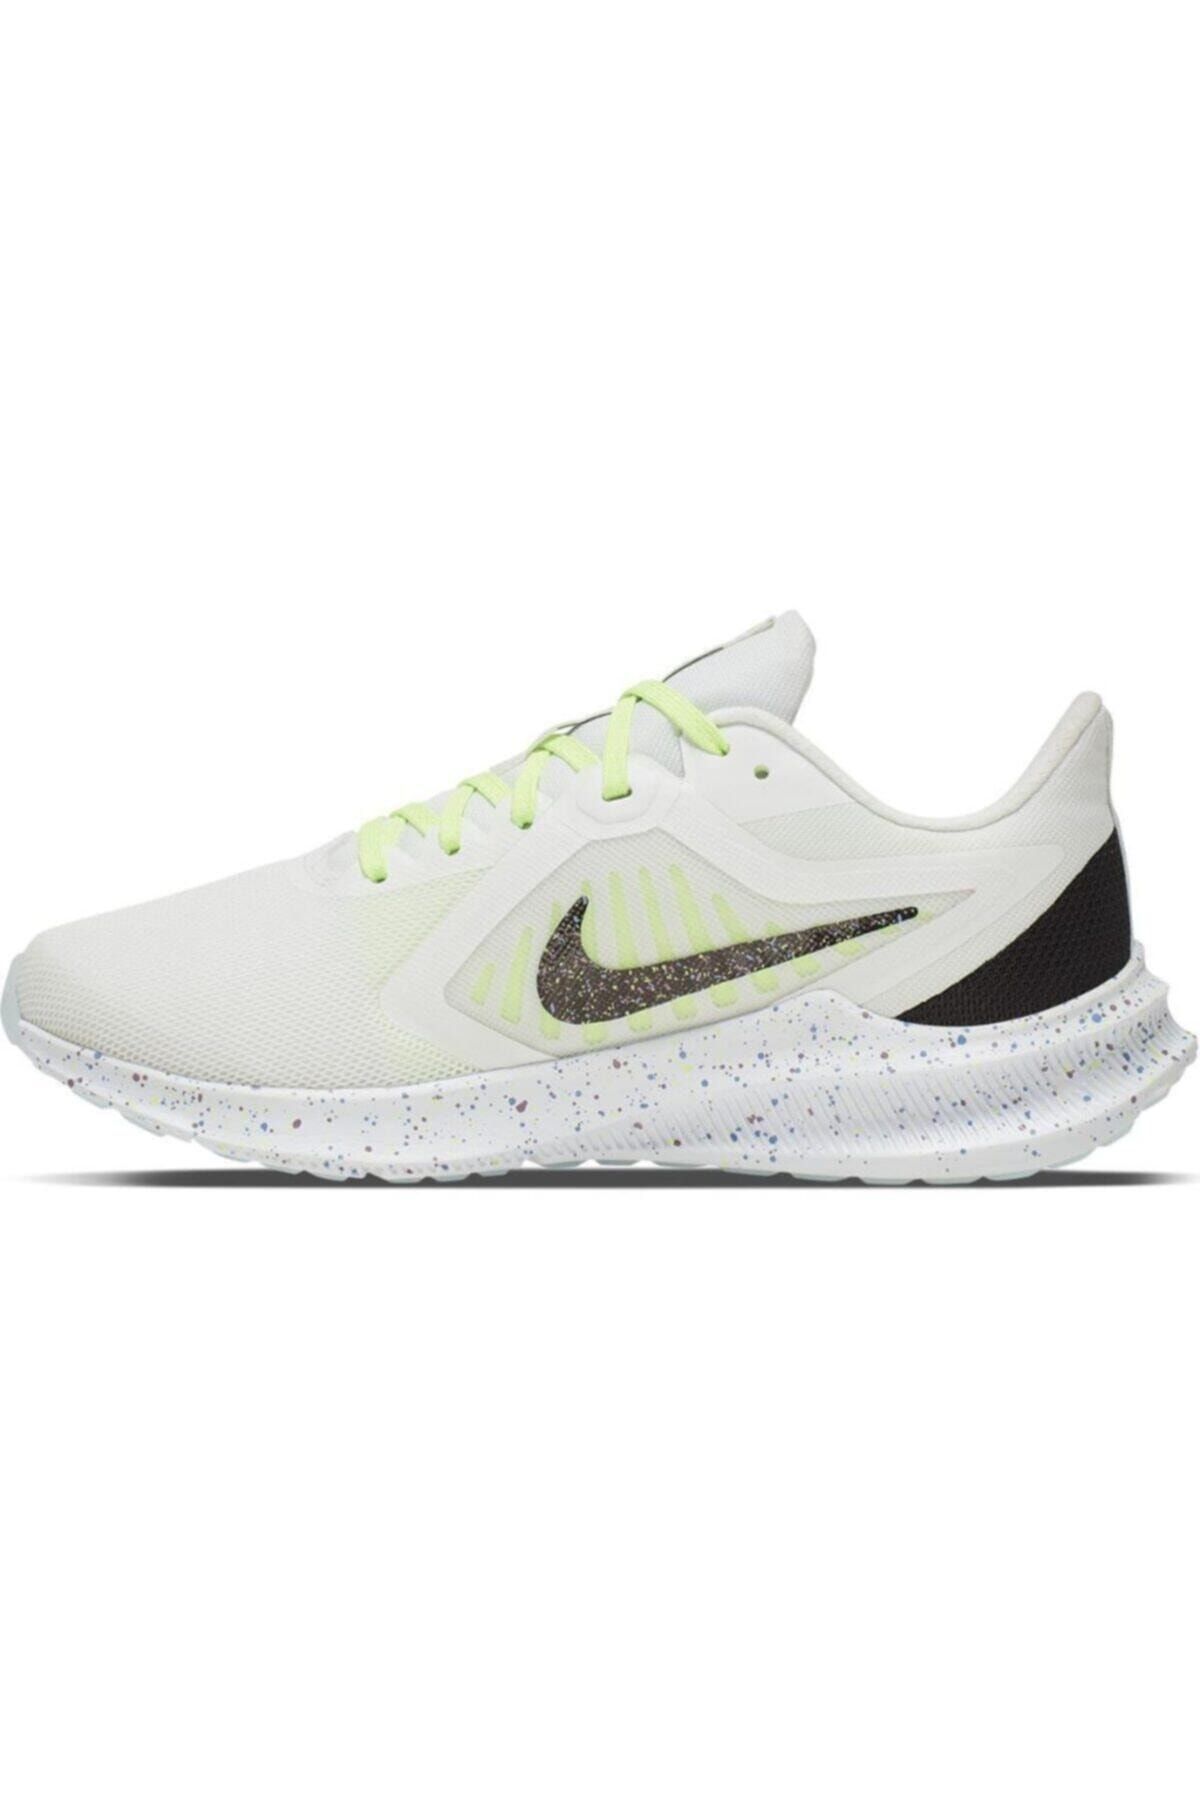 Nike Downshifter 10 Se Kadın Beyaz Koşu Ayakkabısı Cı9985-100